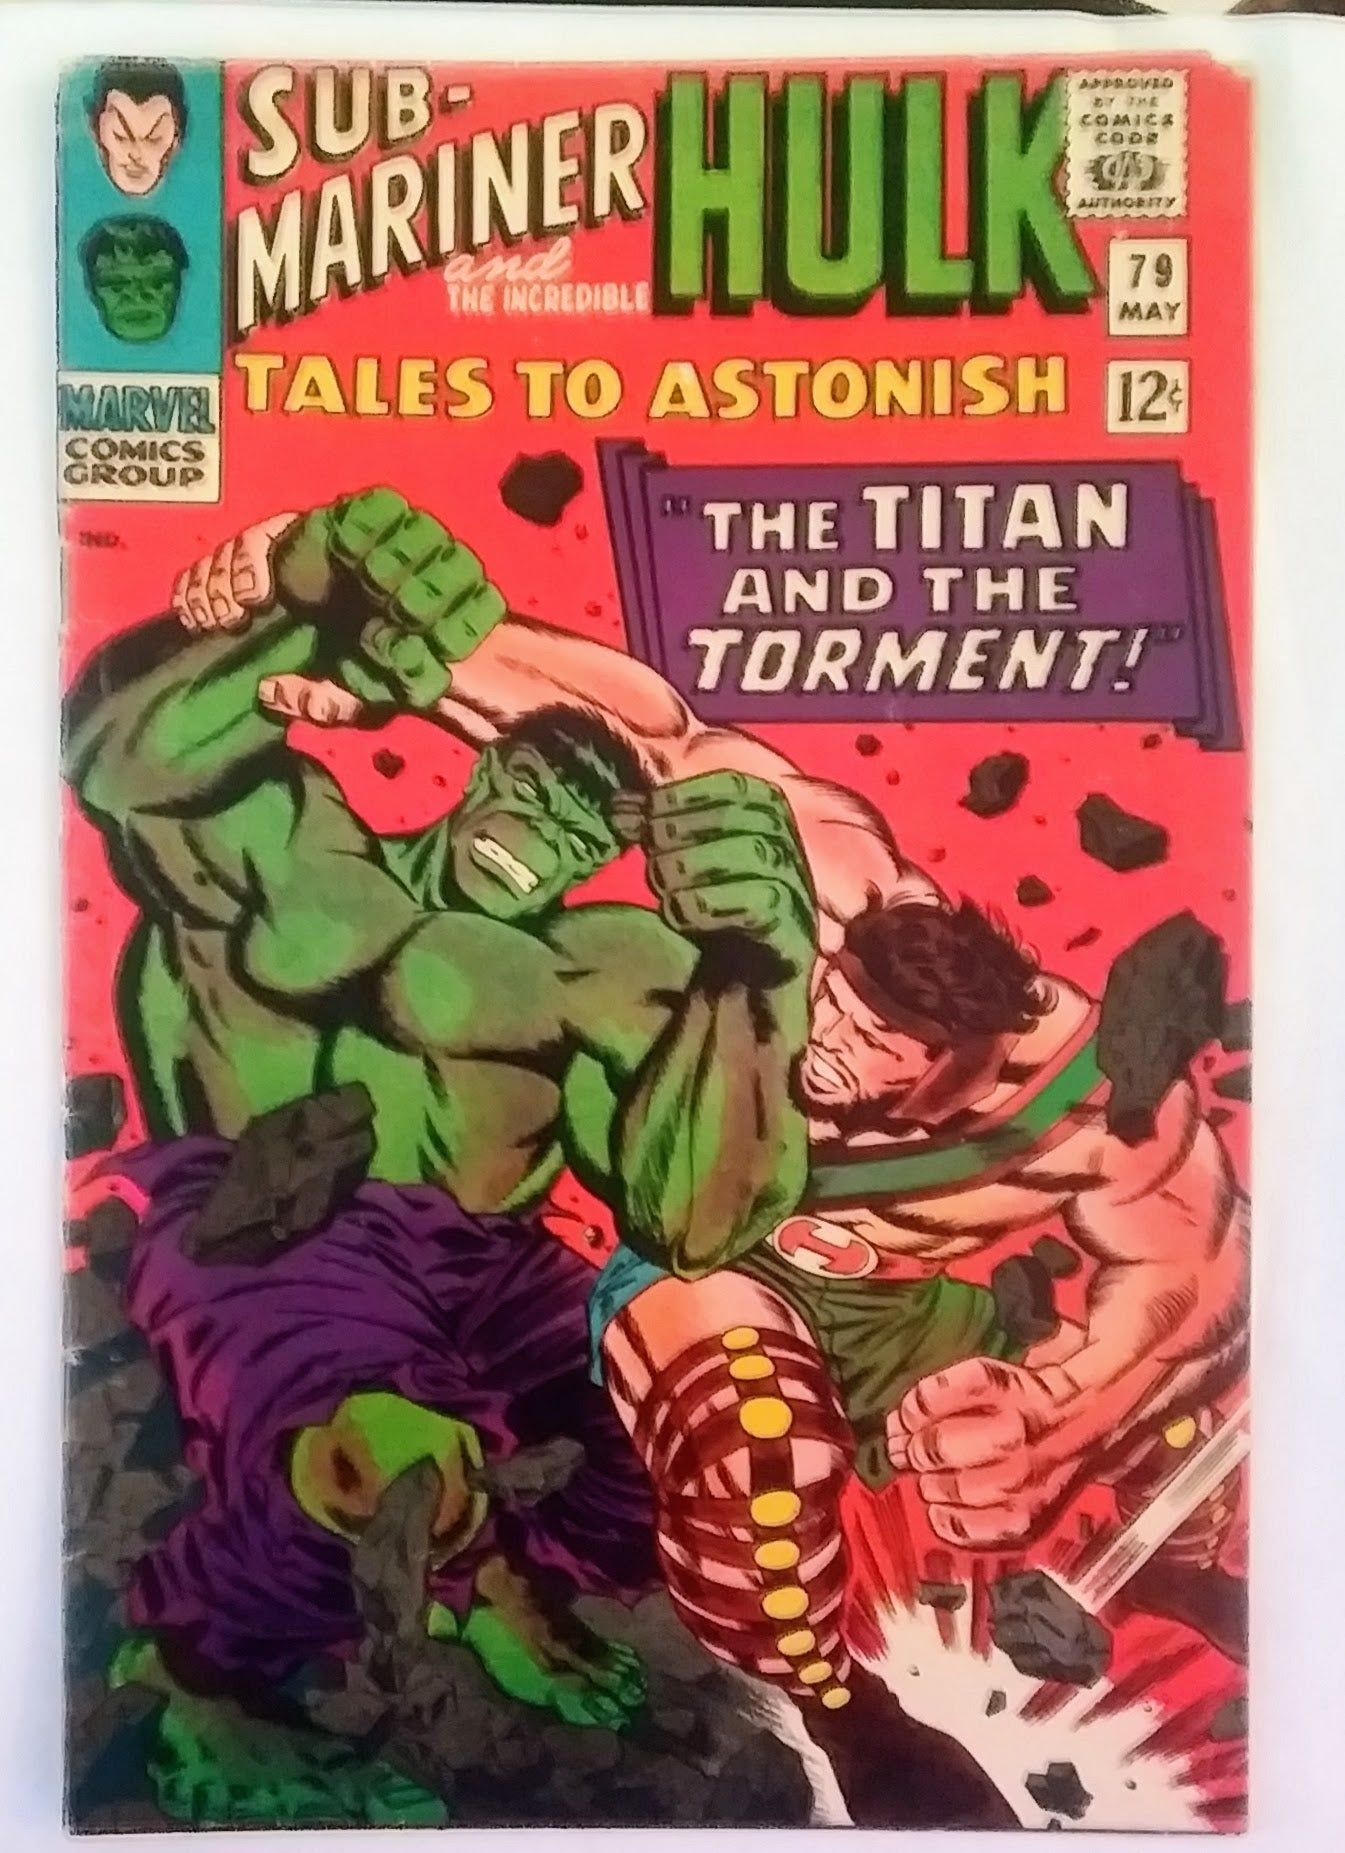 Tales to Astonish #079, Marvel Comics (May 1966)